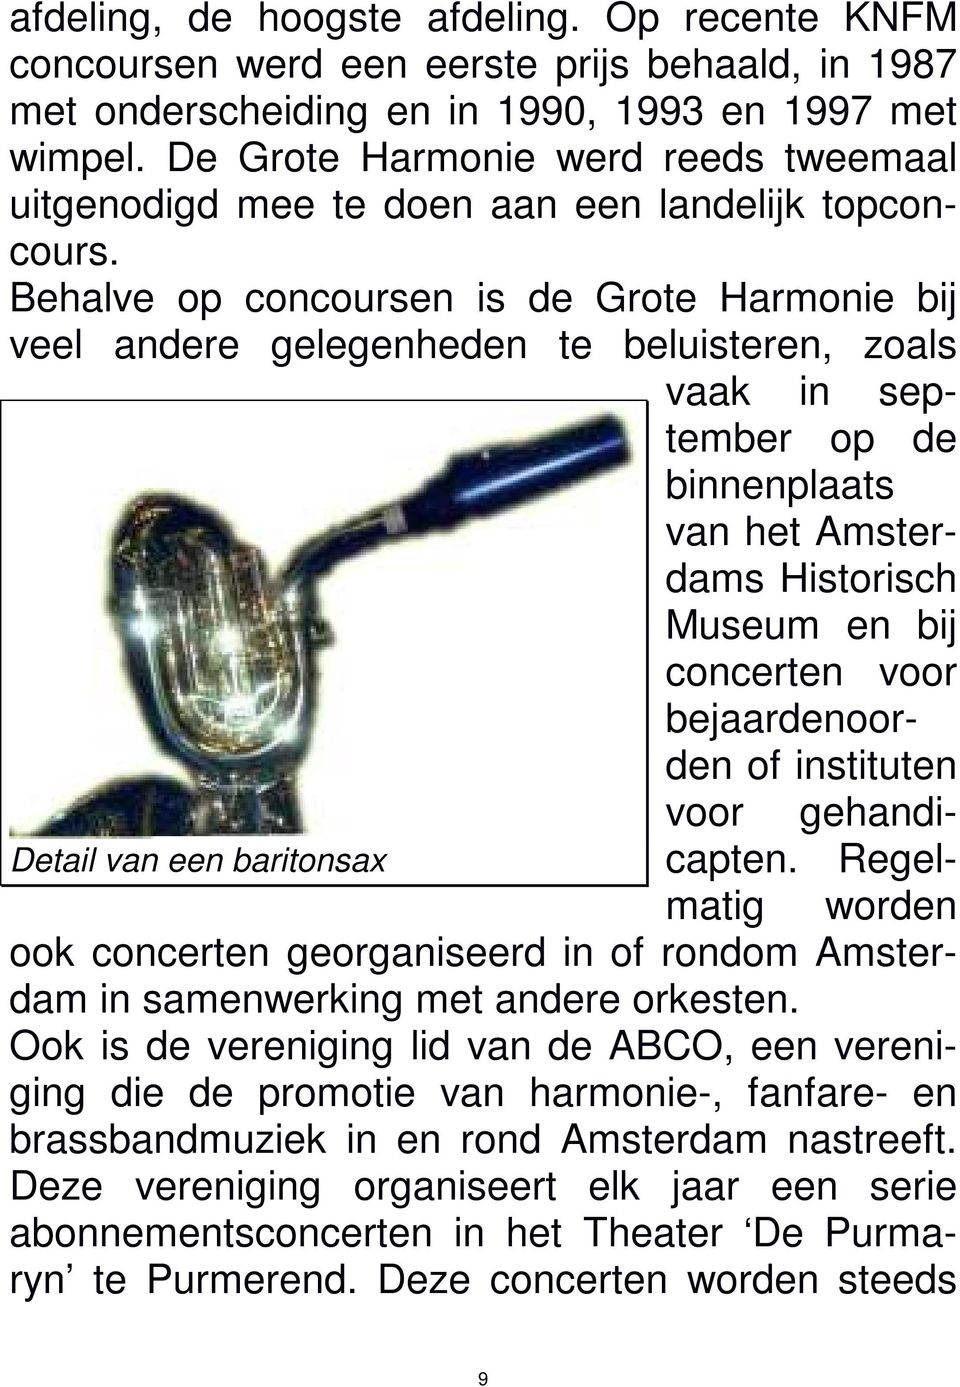 Behalve op concoursen is de Grote Harmonie bij veel andere gelegenheden te beluisteren, zoals vaak in september op de binnenplaats van het Amsterdams Historisch Museum en bij concerten voor